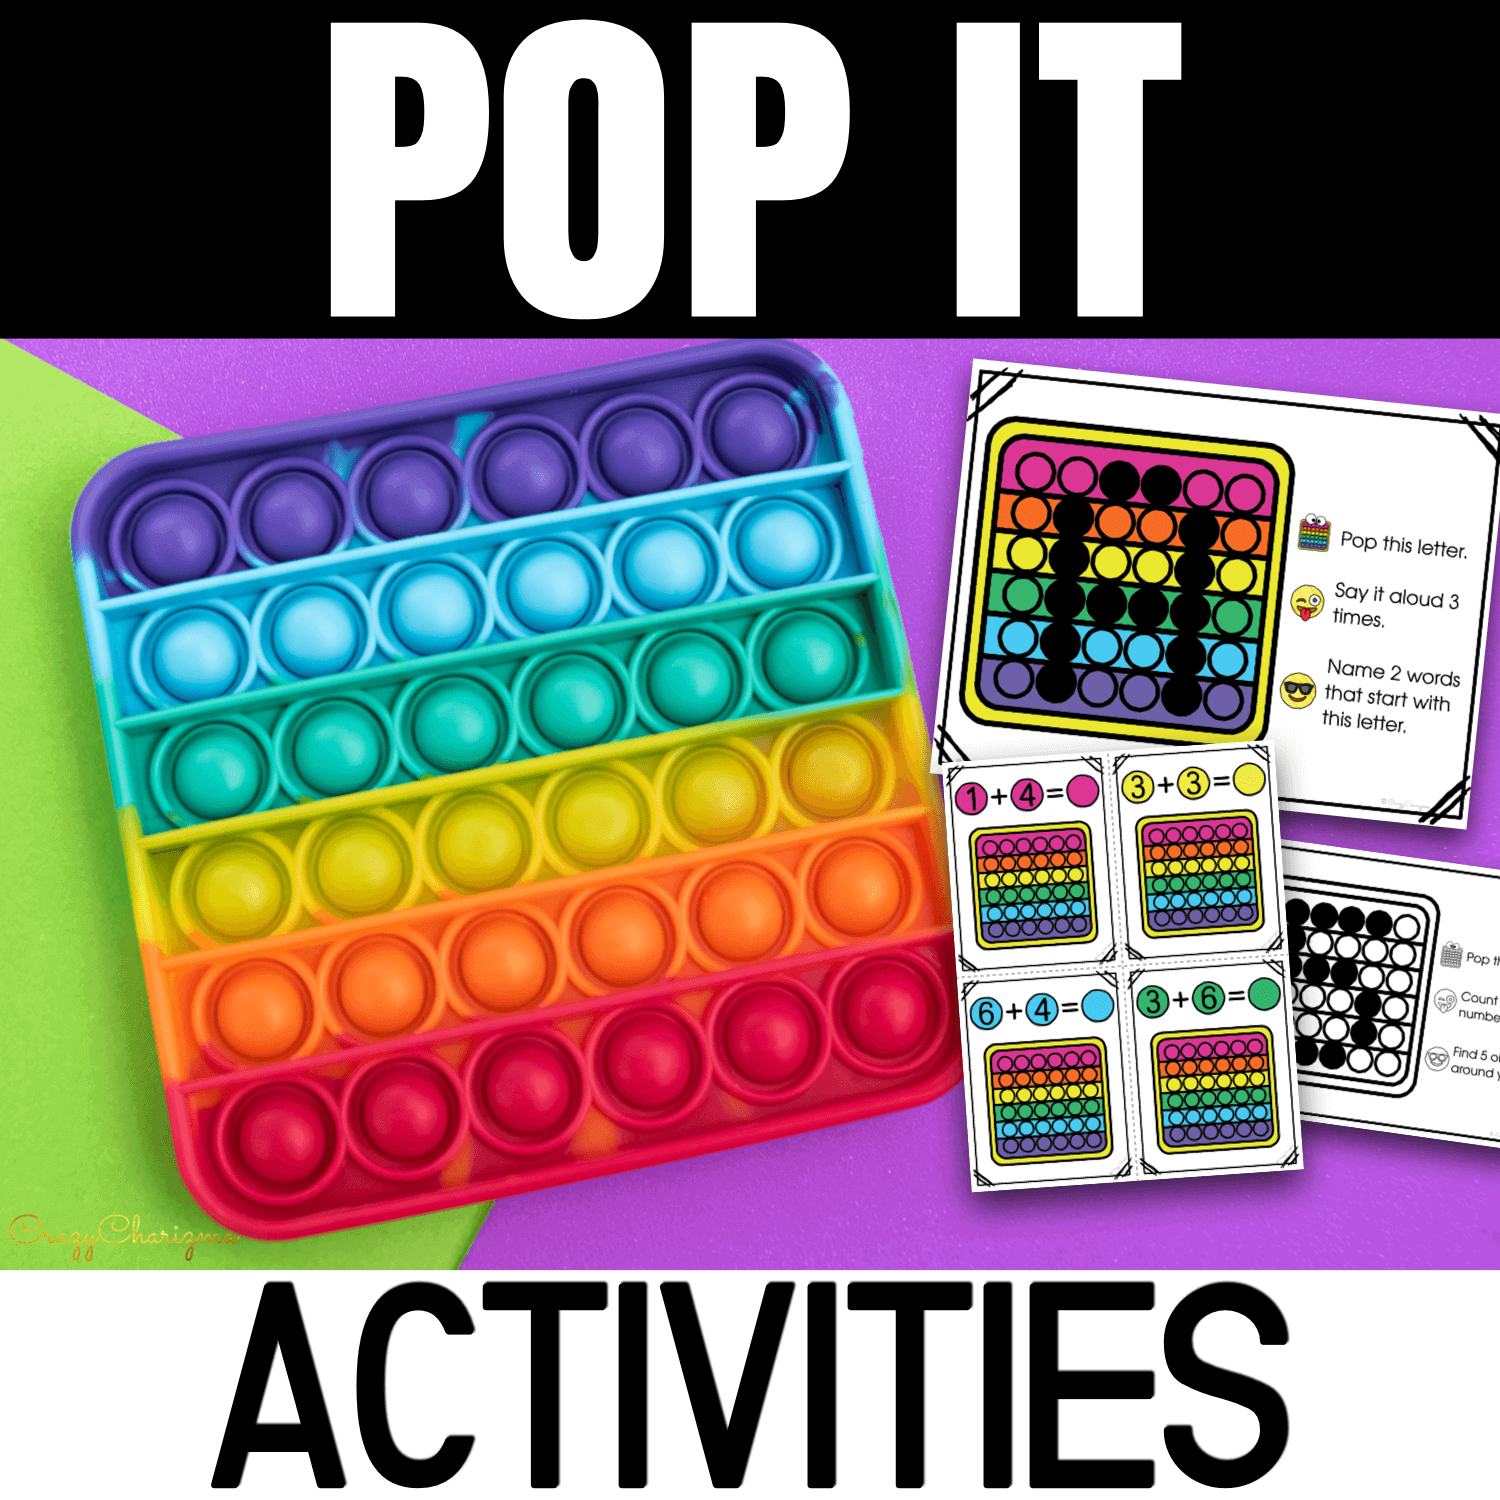 Popit activities